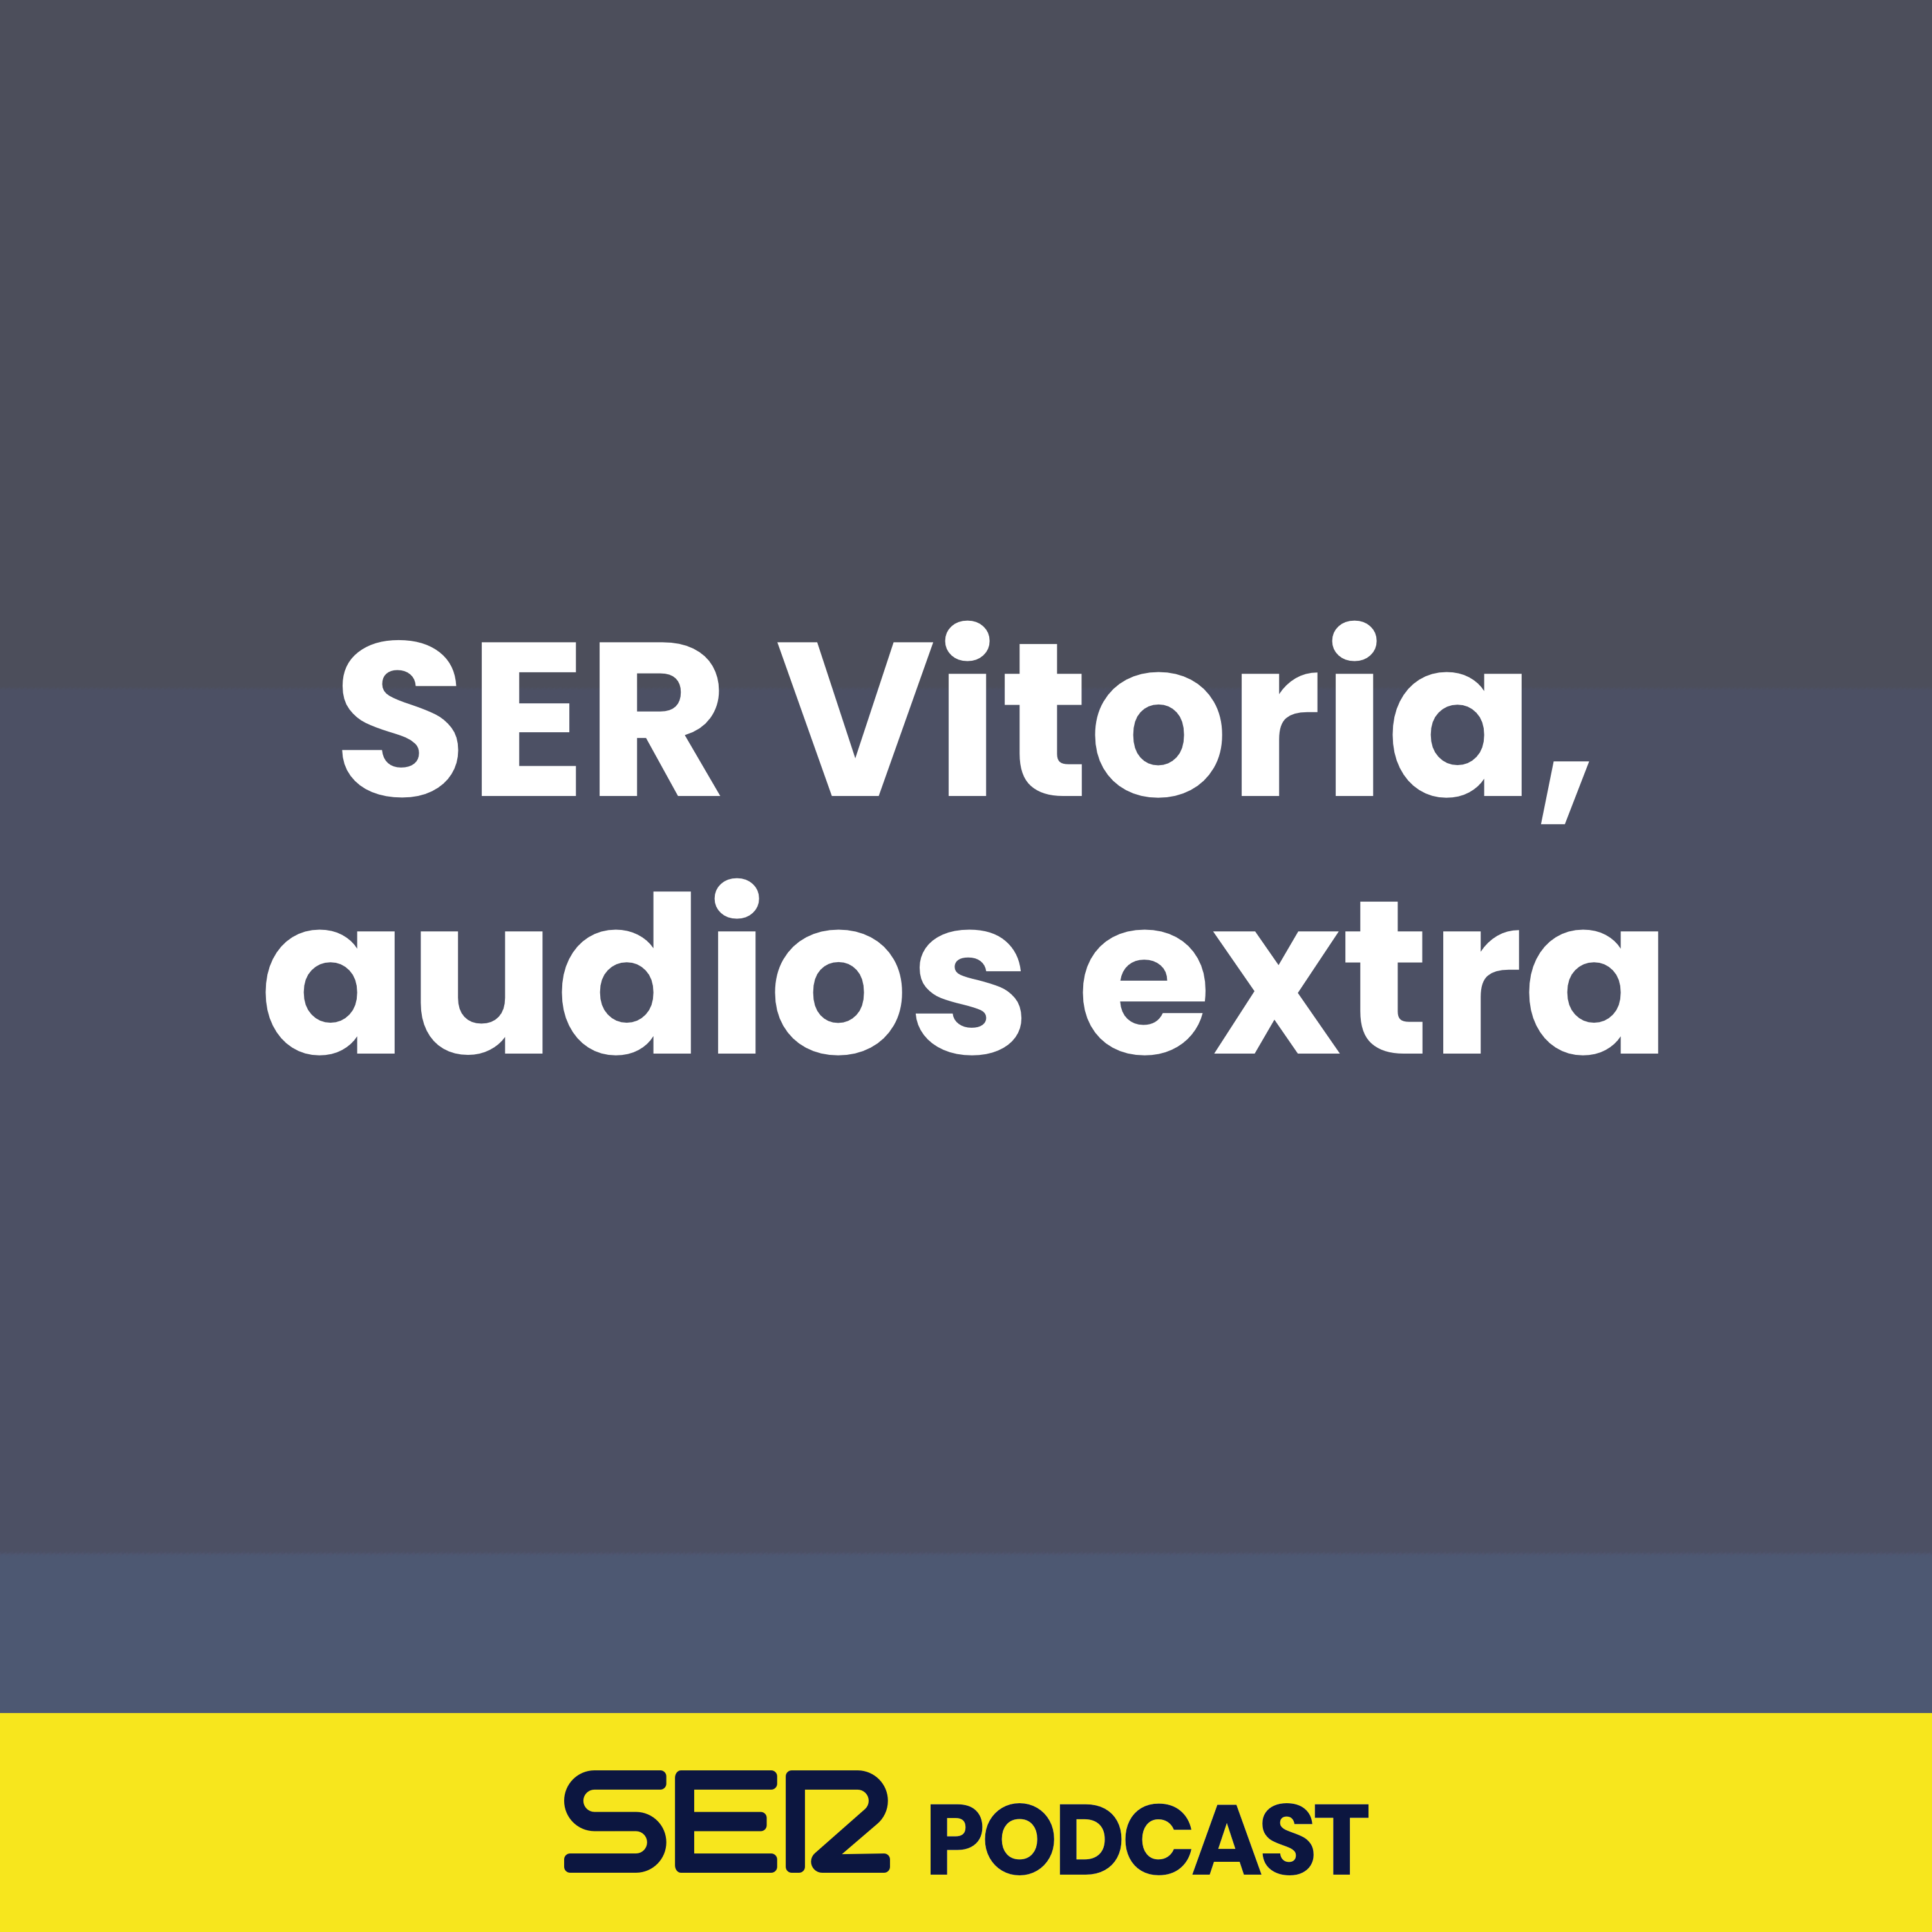 SER Vitoria, audios extra